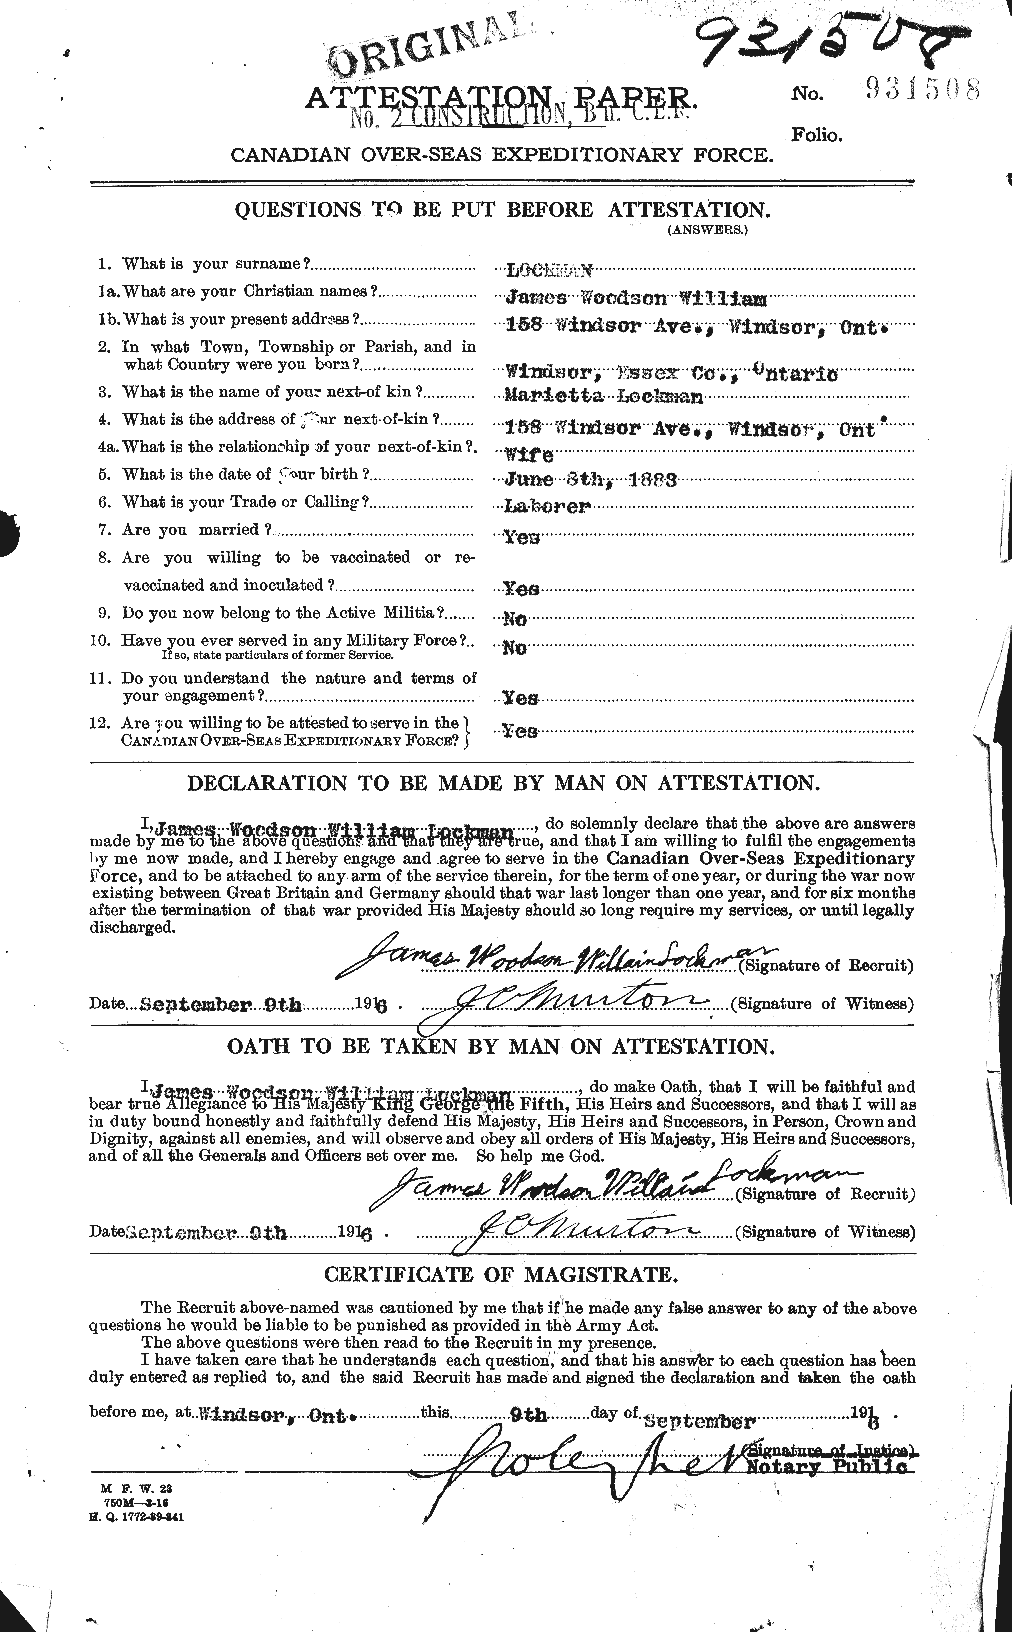 Dossiers du Personnel de la Première Guerre mondiale - CEC 464650a